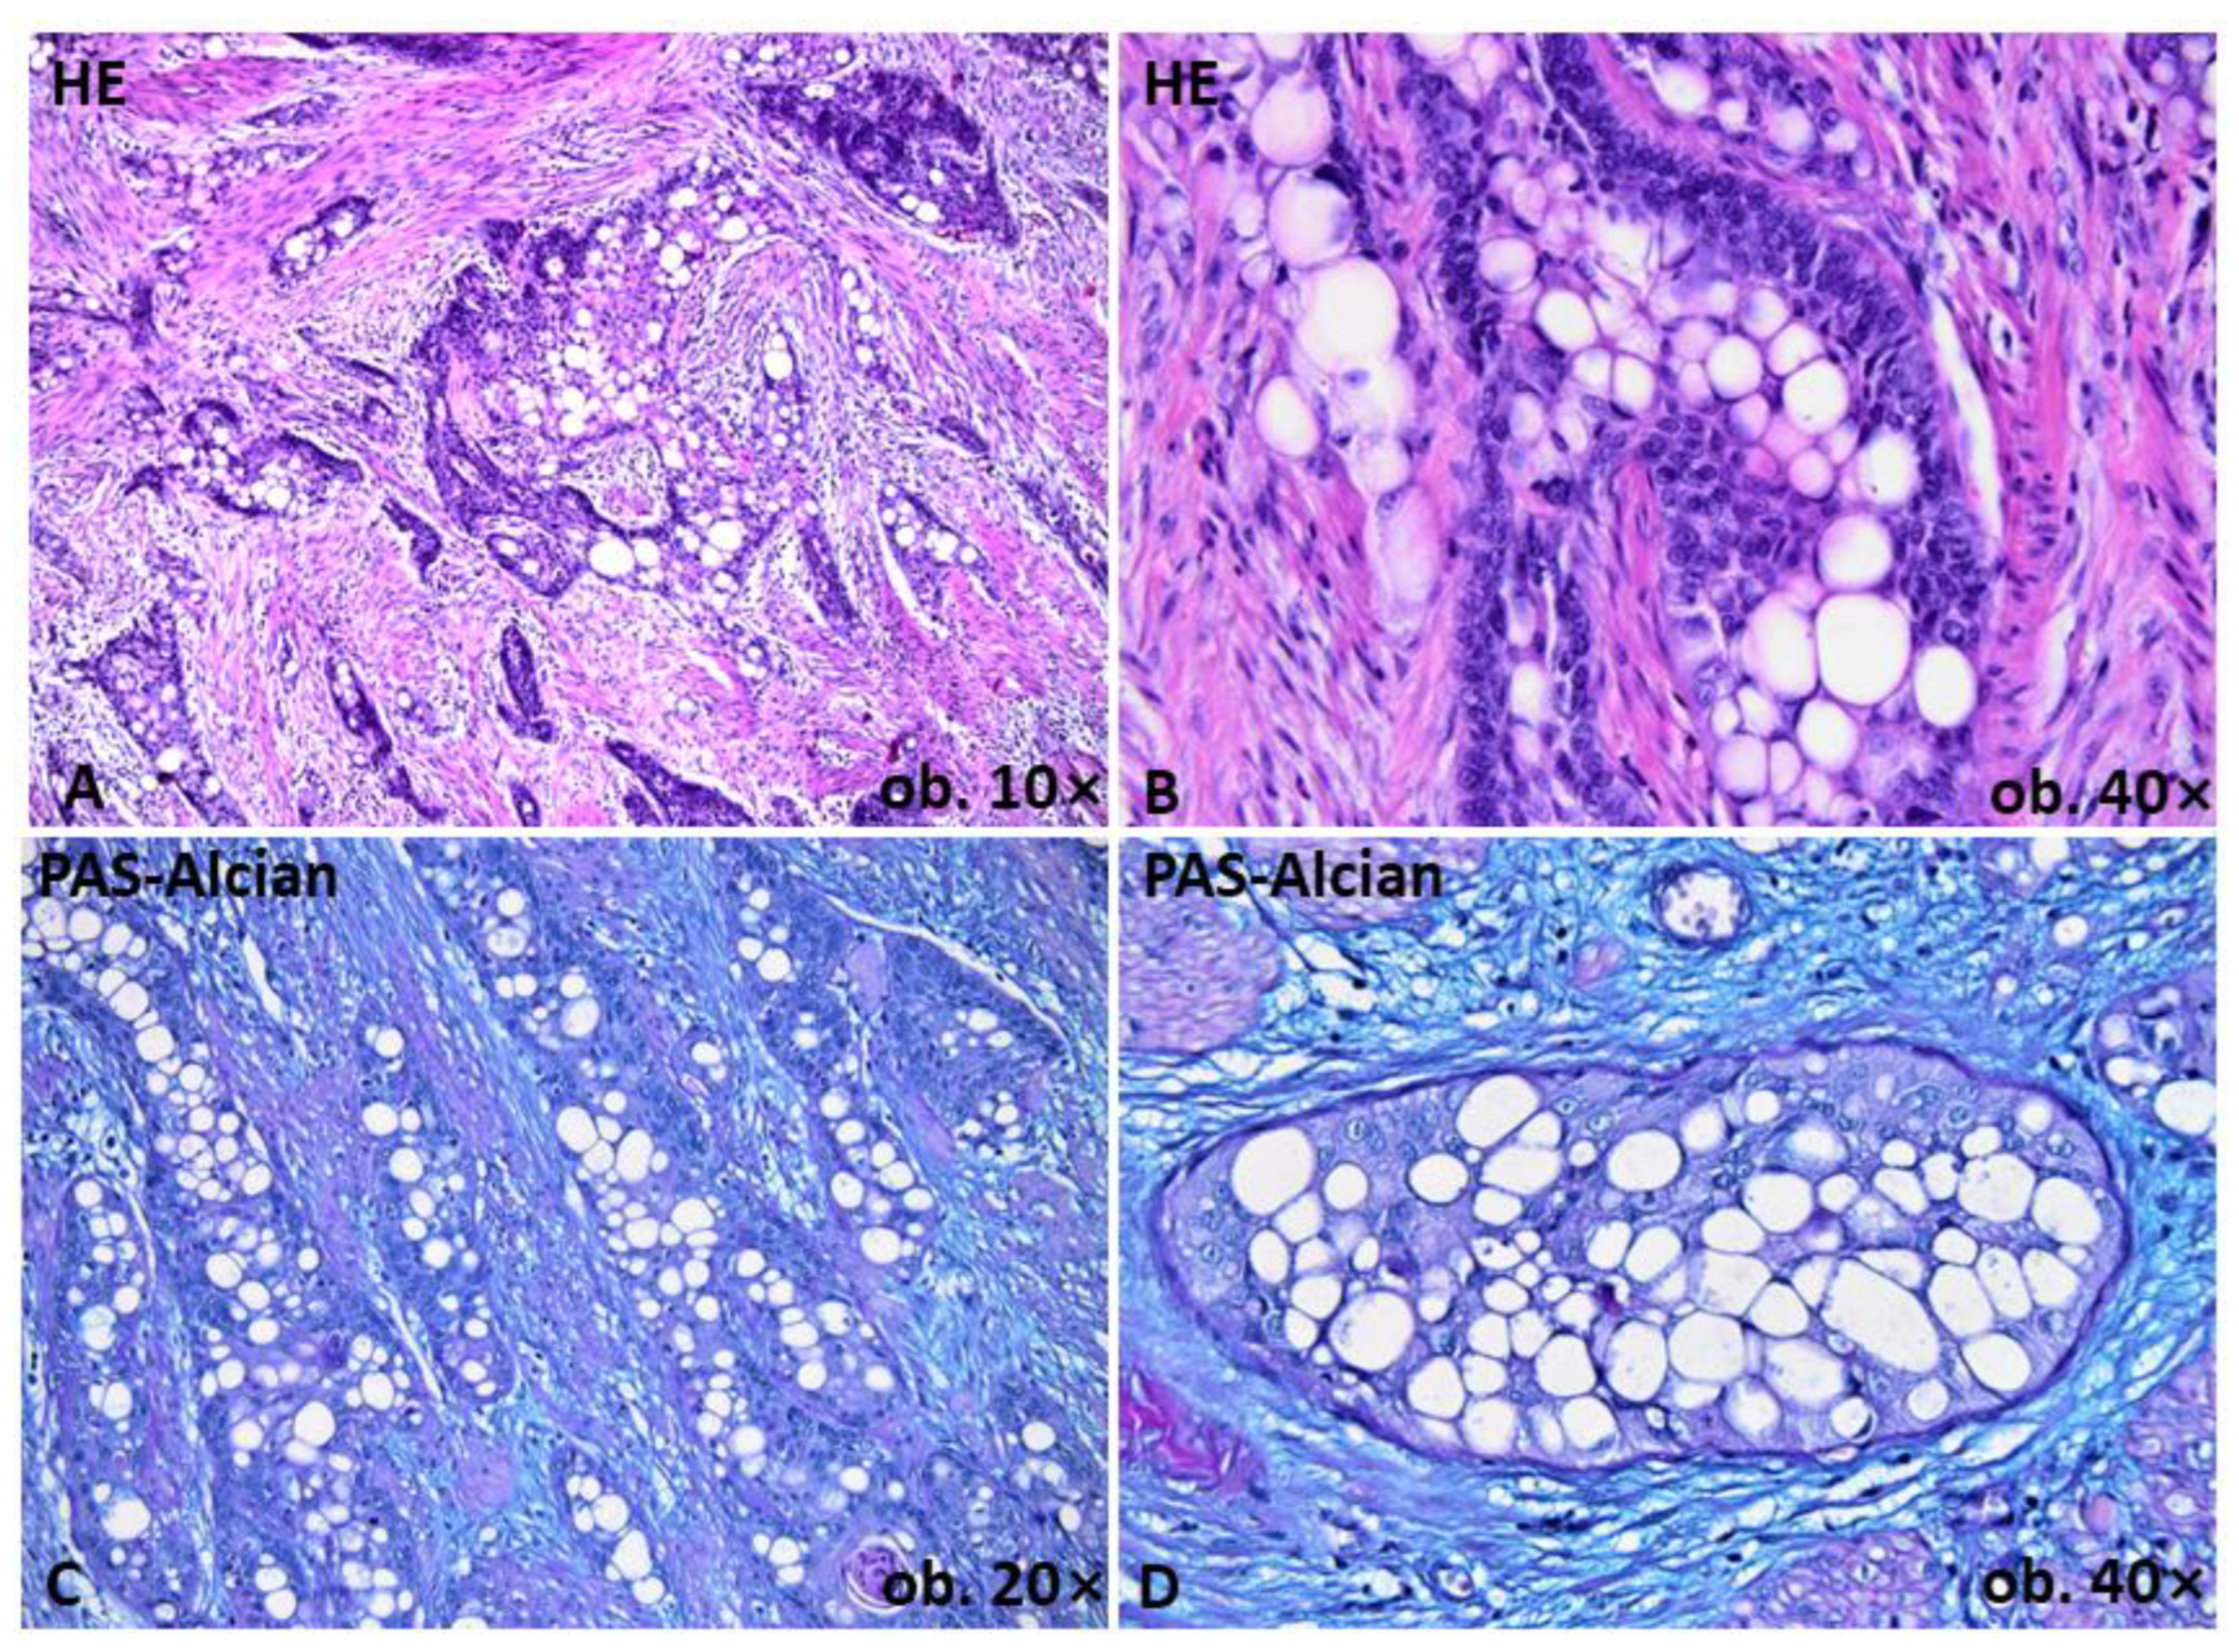 Signet ring cell carcinoma arising from sacrococcygeal teratoma: a case  report and review of the literature - Pengfei Zhou, Shiju Liu, Huiju Yang,  Yaxin Jiang, Xiang Liu, Dianwen Liu, 2019